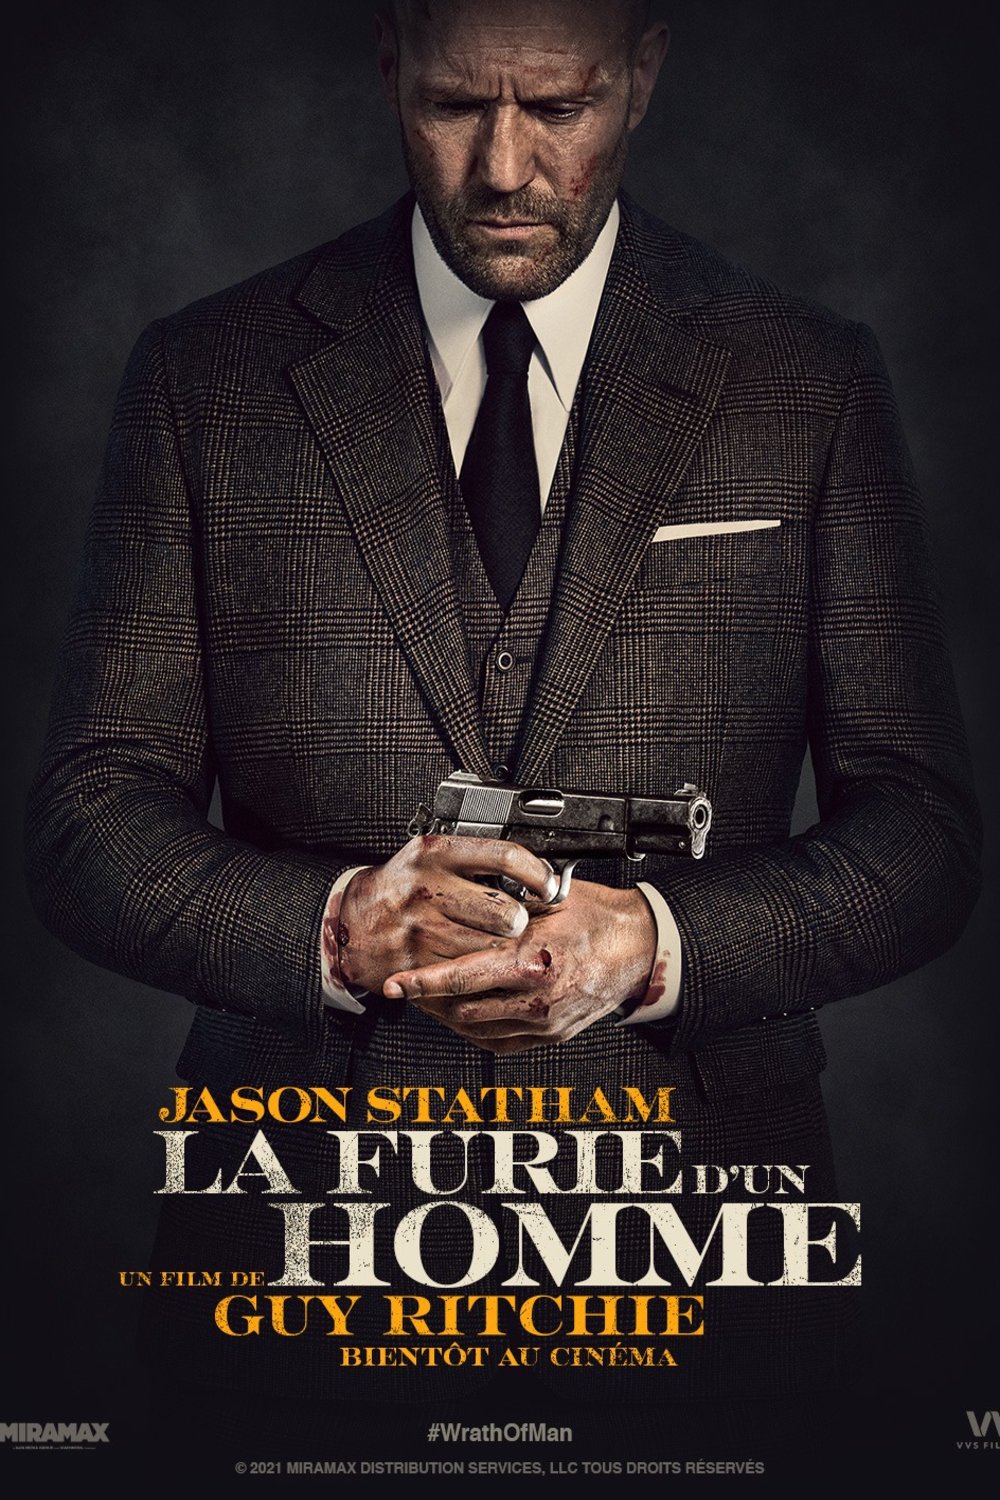 Poster of the movie La furie d'un homme